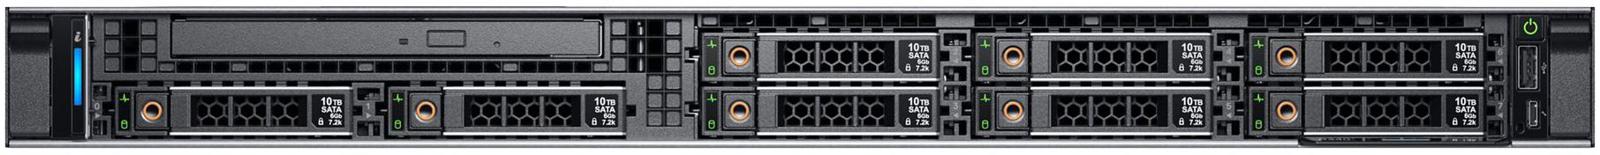 Сервер R340 вид спереди